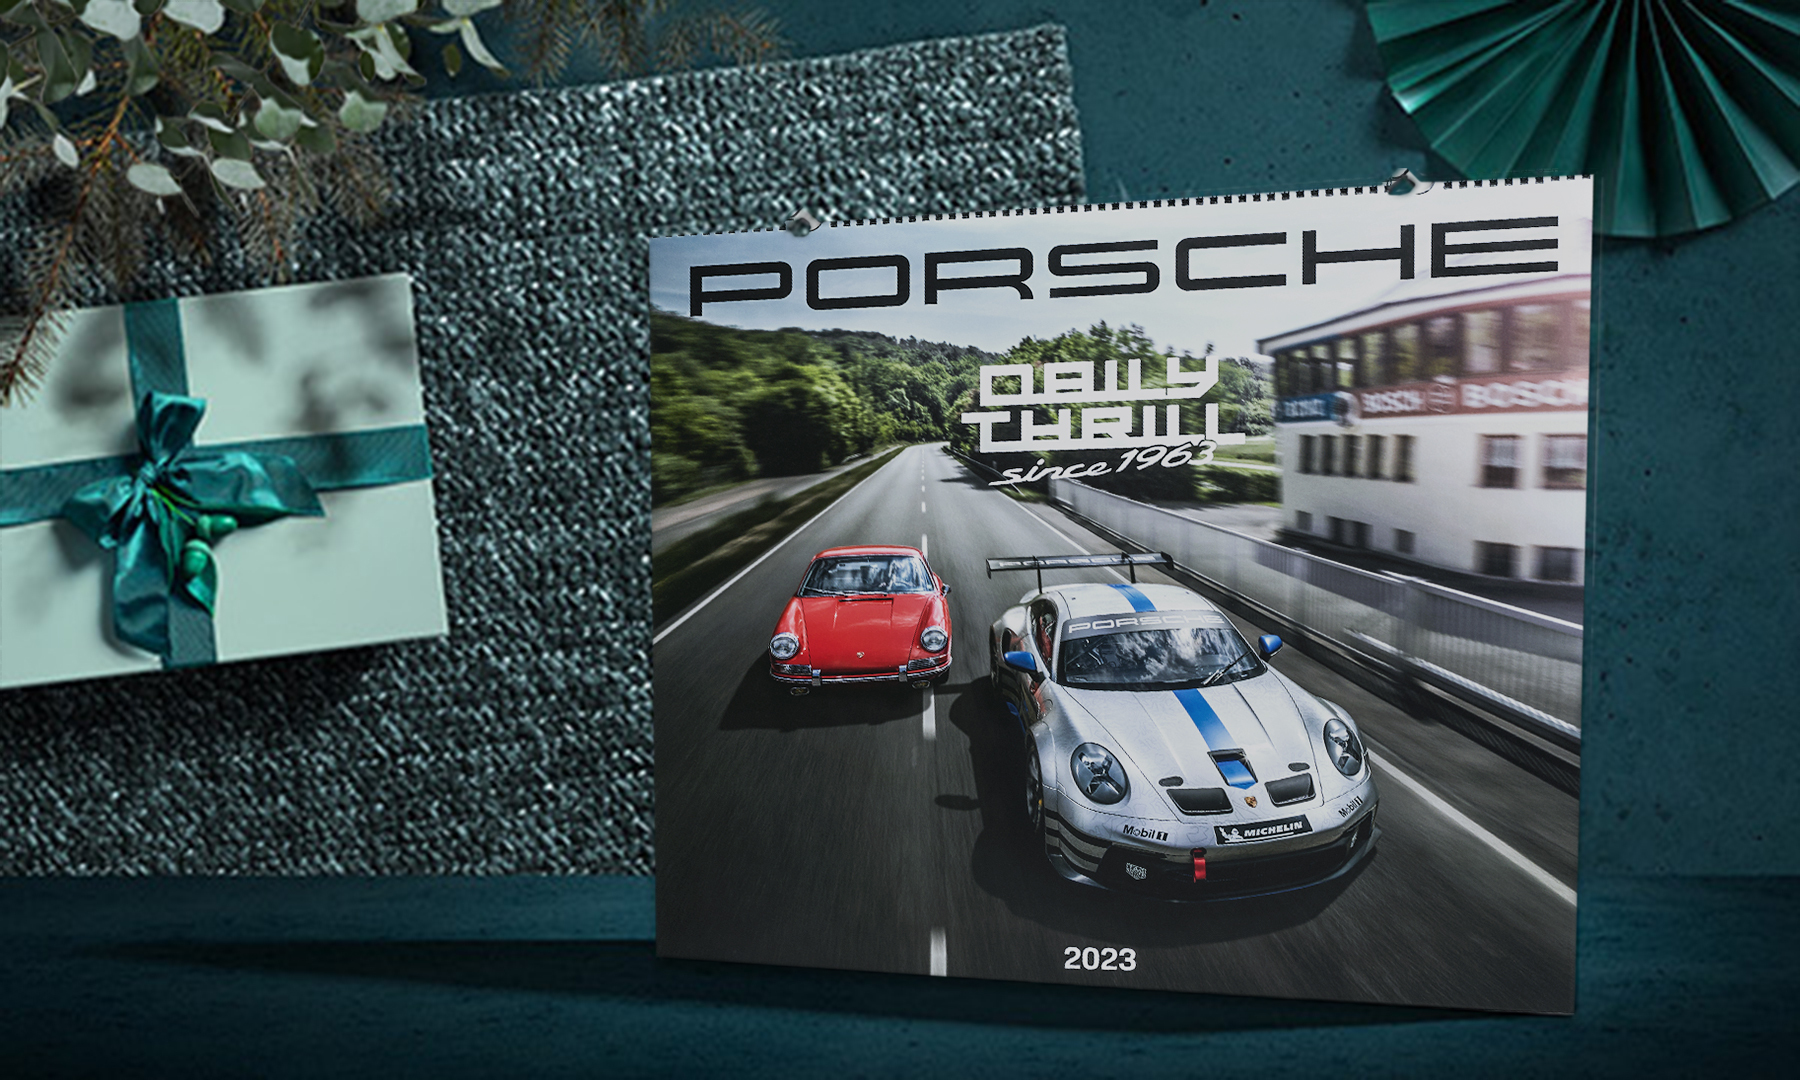 Porsche 2023 calendar lying next to green present